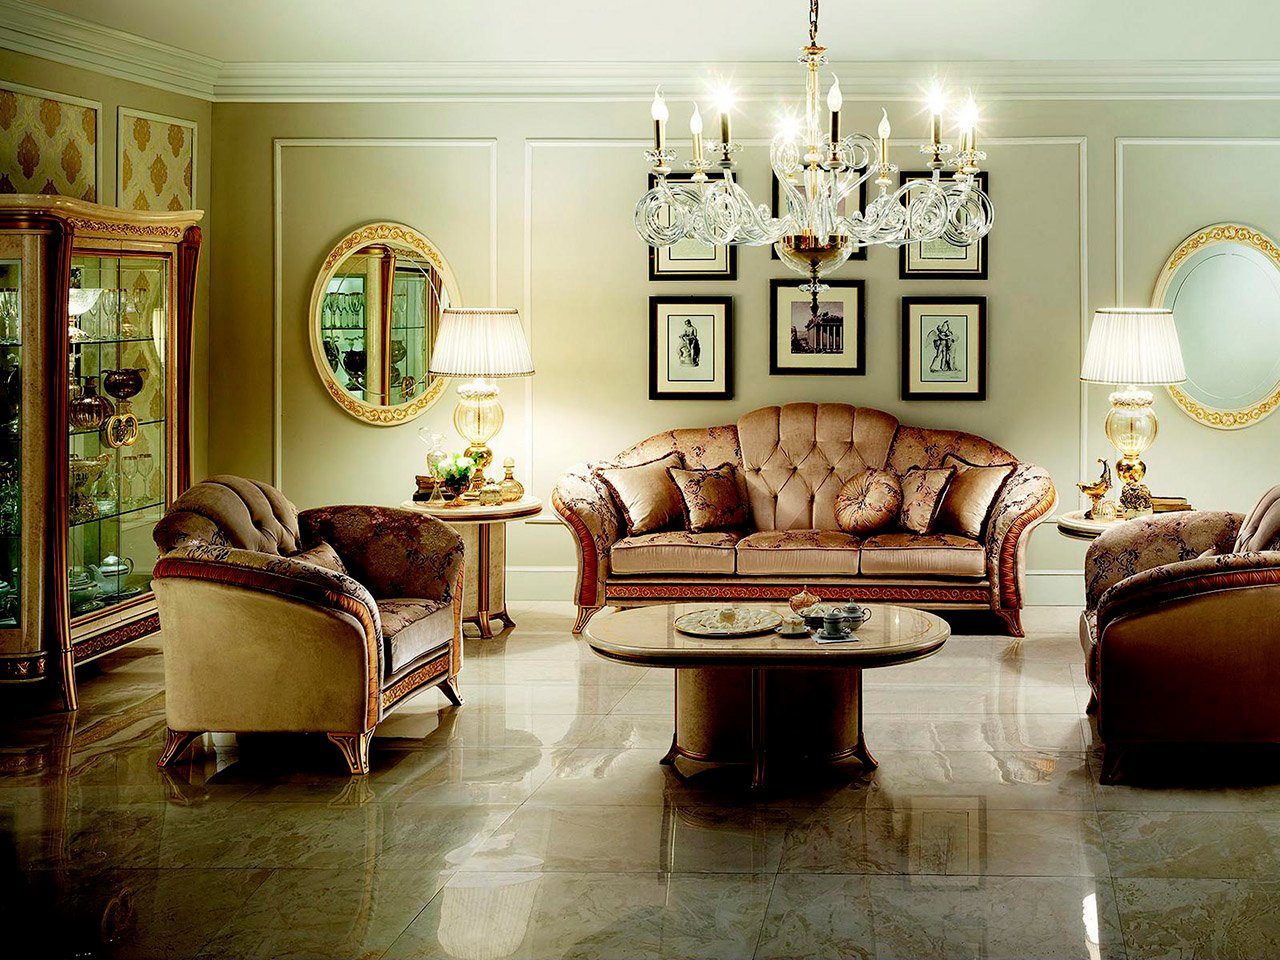 JVmoebel Wohnzimmer-Set, arredoclassic™ Sofagarnitur Sofa Couch 3 + 2 Wohnzimmer Designer Möbel Klassisch Barock